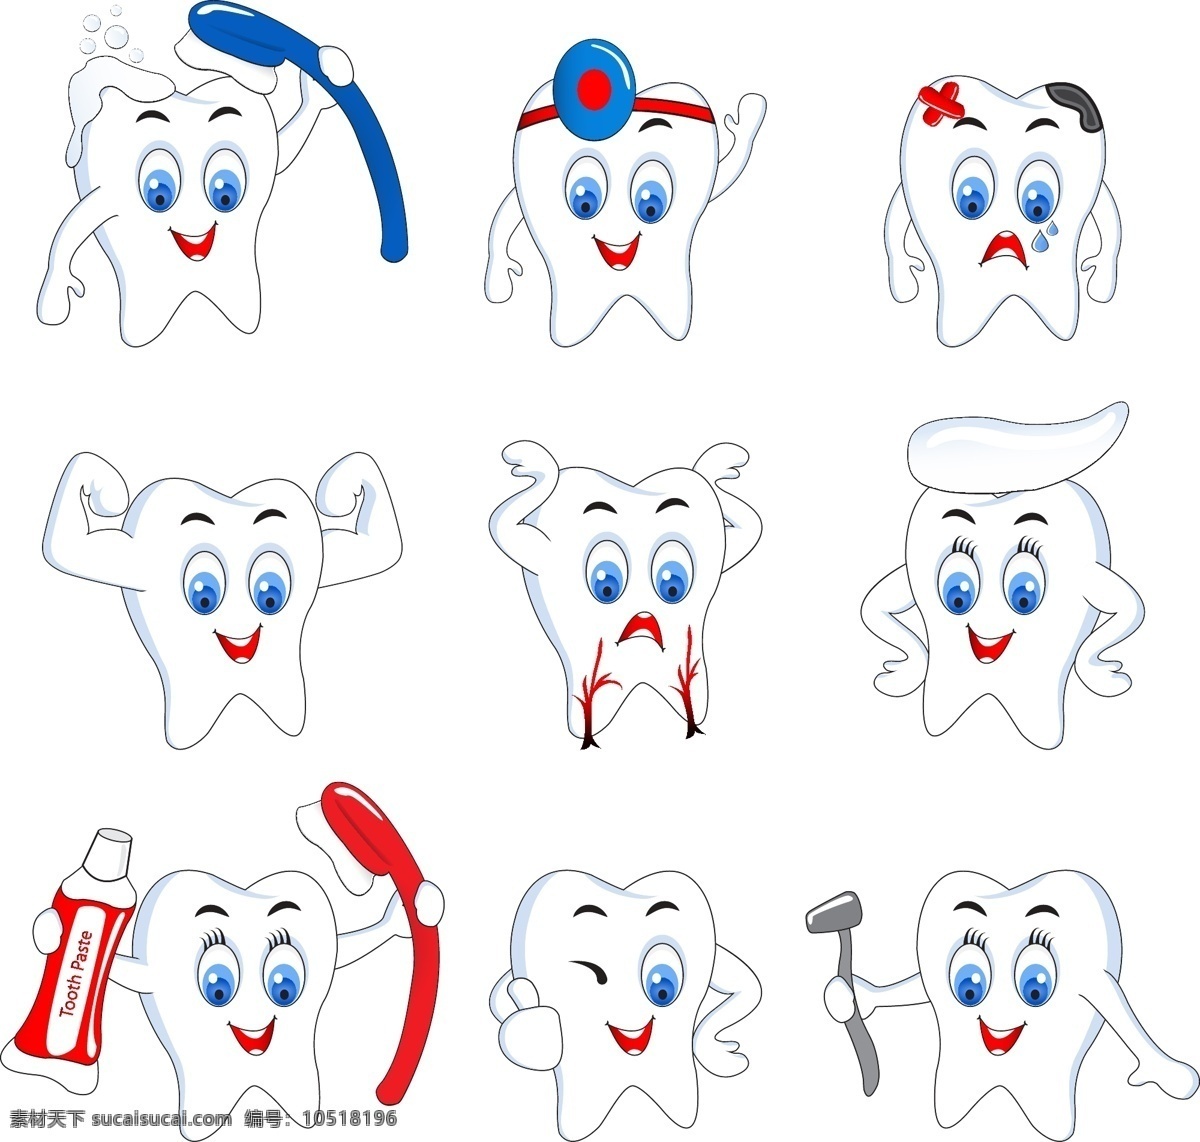 卡通牙齿 刷牙 健康牙齿 有问题牙齿 形象可爱 动漫动画 动漫人物